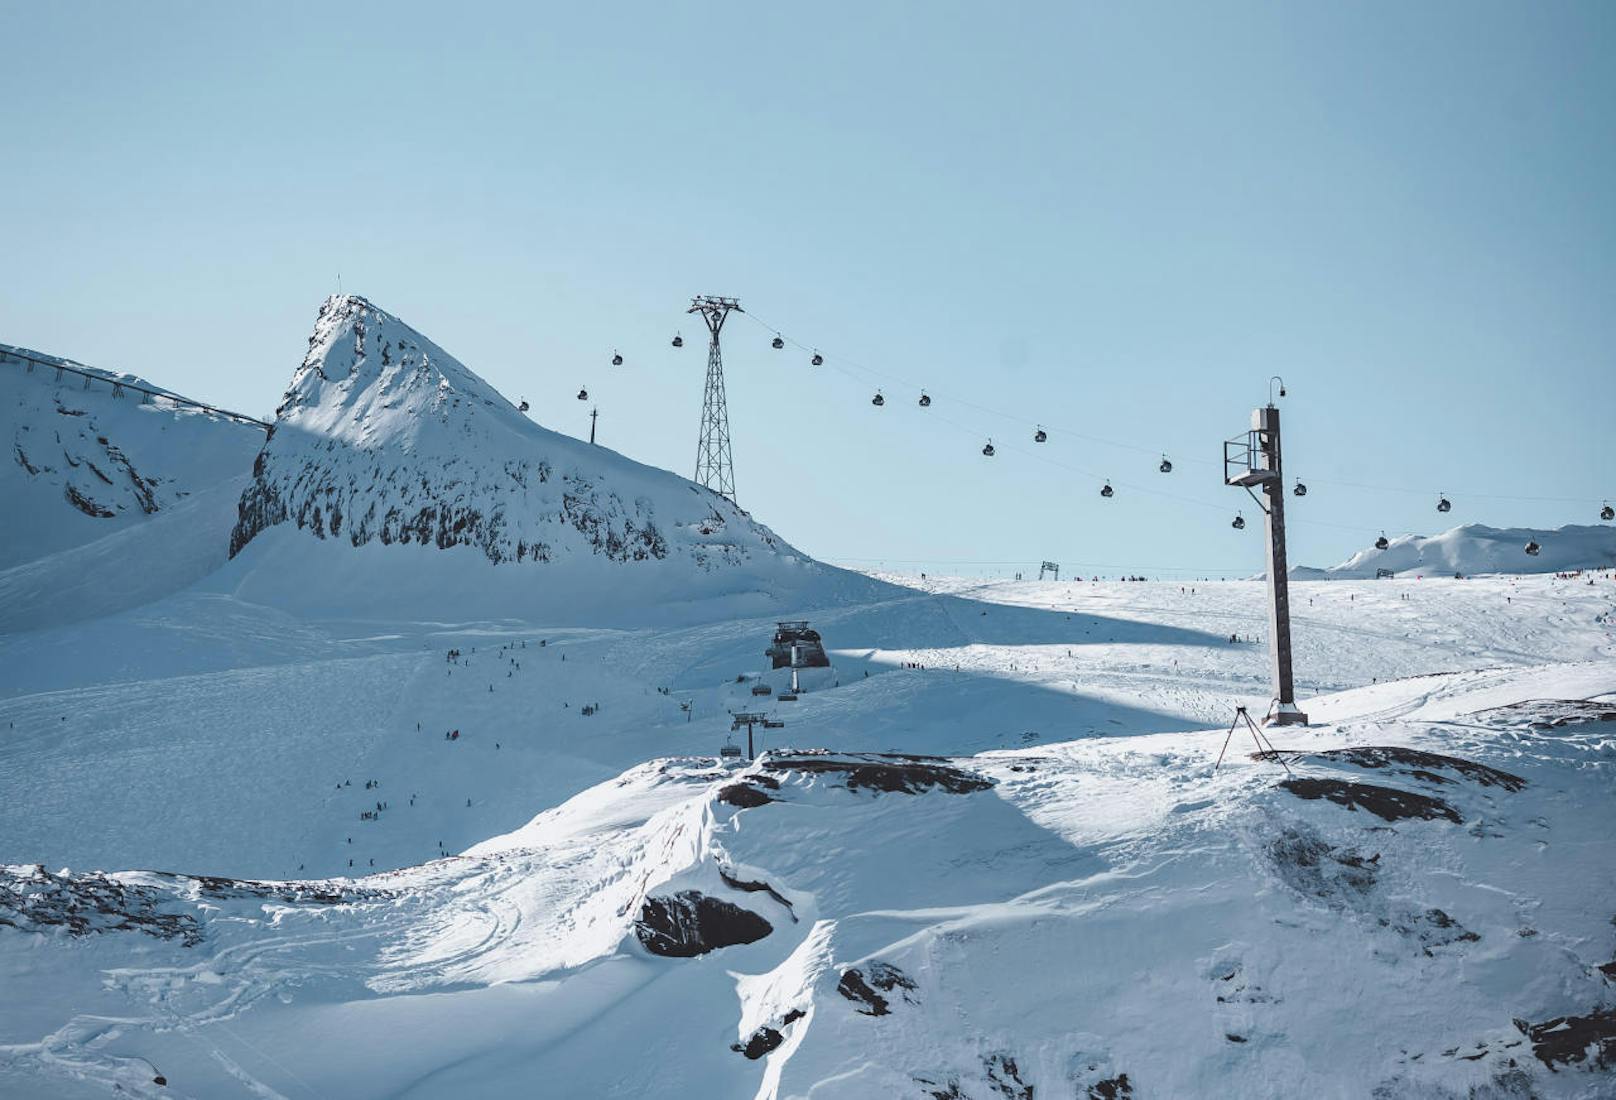 Seilbahnanlagen (Gletscherjet 4) am Kitzsteinhorn, aufgenommen am 10. November 2019, Kaprun, Österreich.